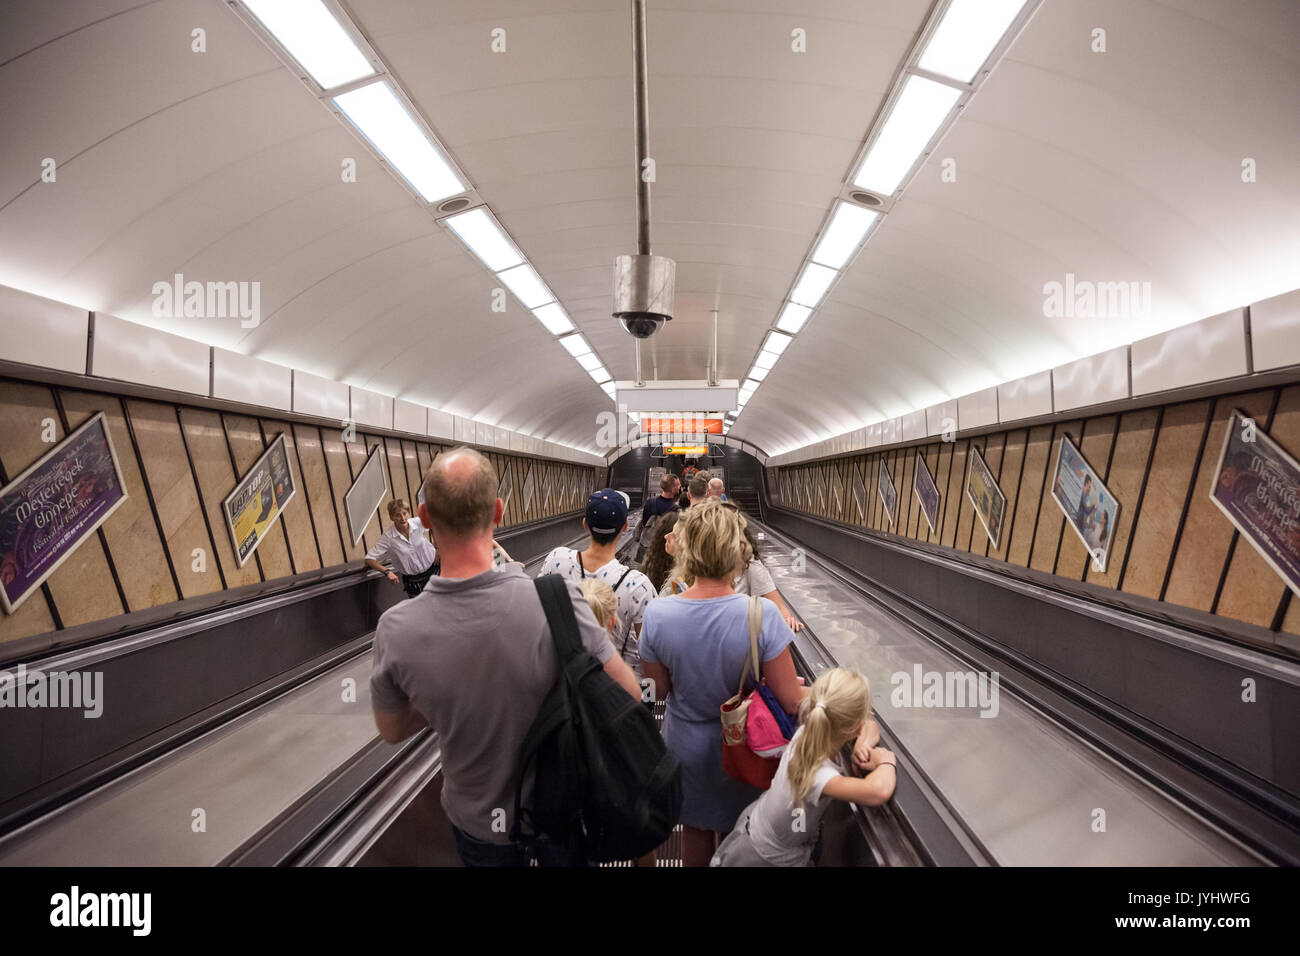 BUDAPEST, Ungarn - 12 August, 2017: die Menschen gehen, eine U-Bahnstation von Budapest auf einer Rolltreppe Bild einer Familie eine Rolltreppe nach unten in eine Stockfoto